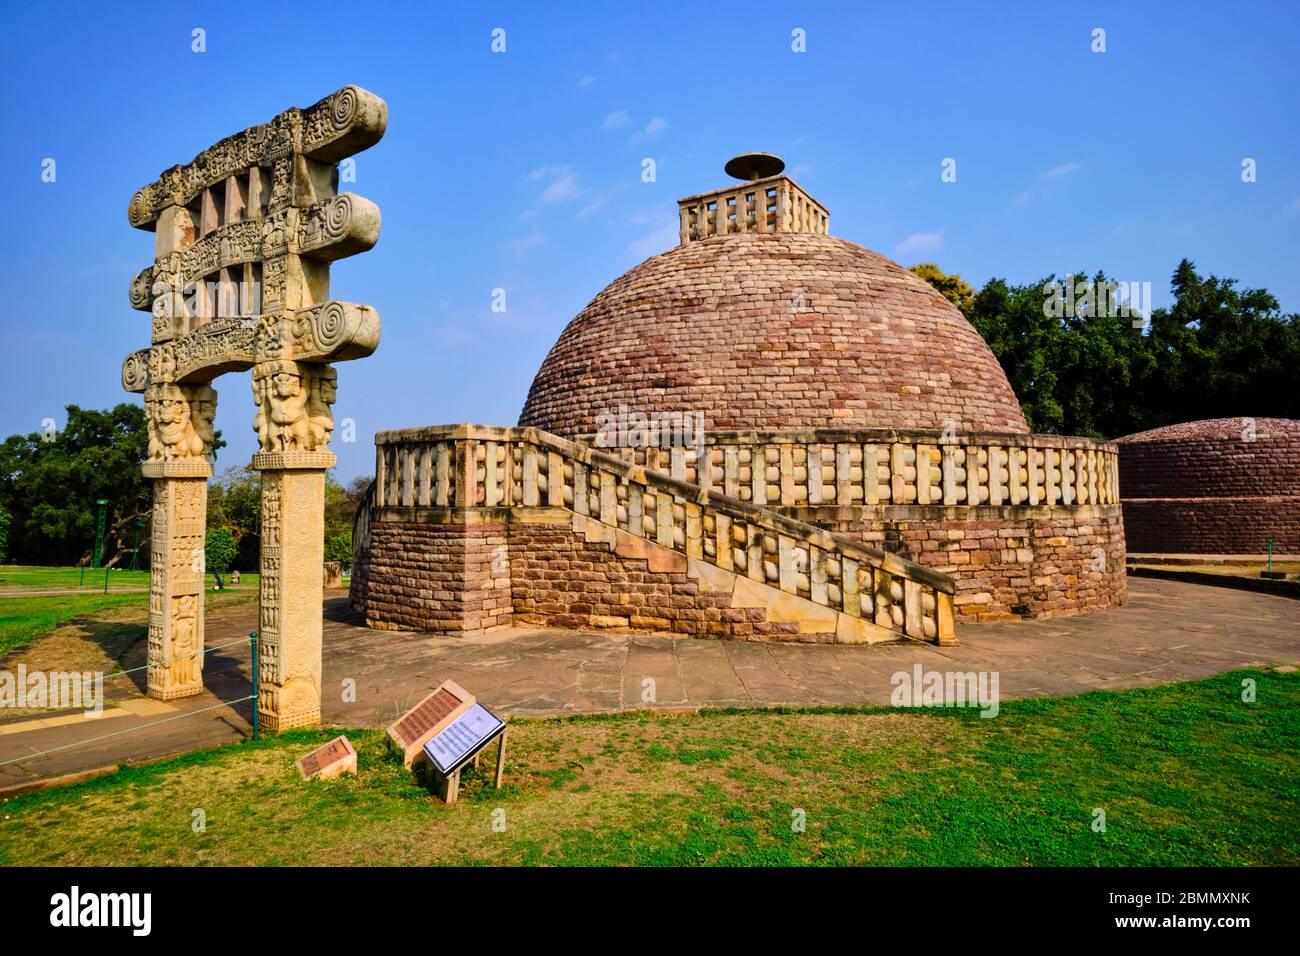 Indien, Madhya Pradesh Staat, Sanchi, buddhistische Denkmäler, die von der UNESCO zum Weltkulturerbe erklärt wurden, Stupa Nr. 3 Stockfoto